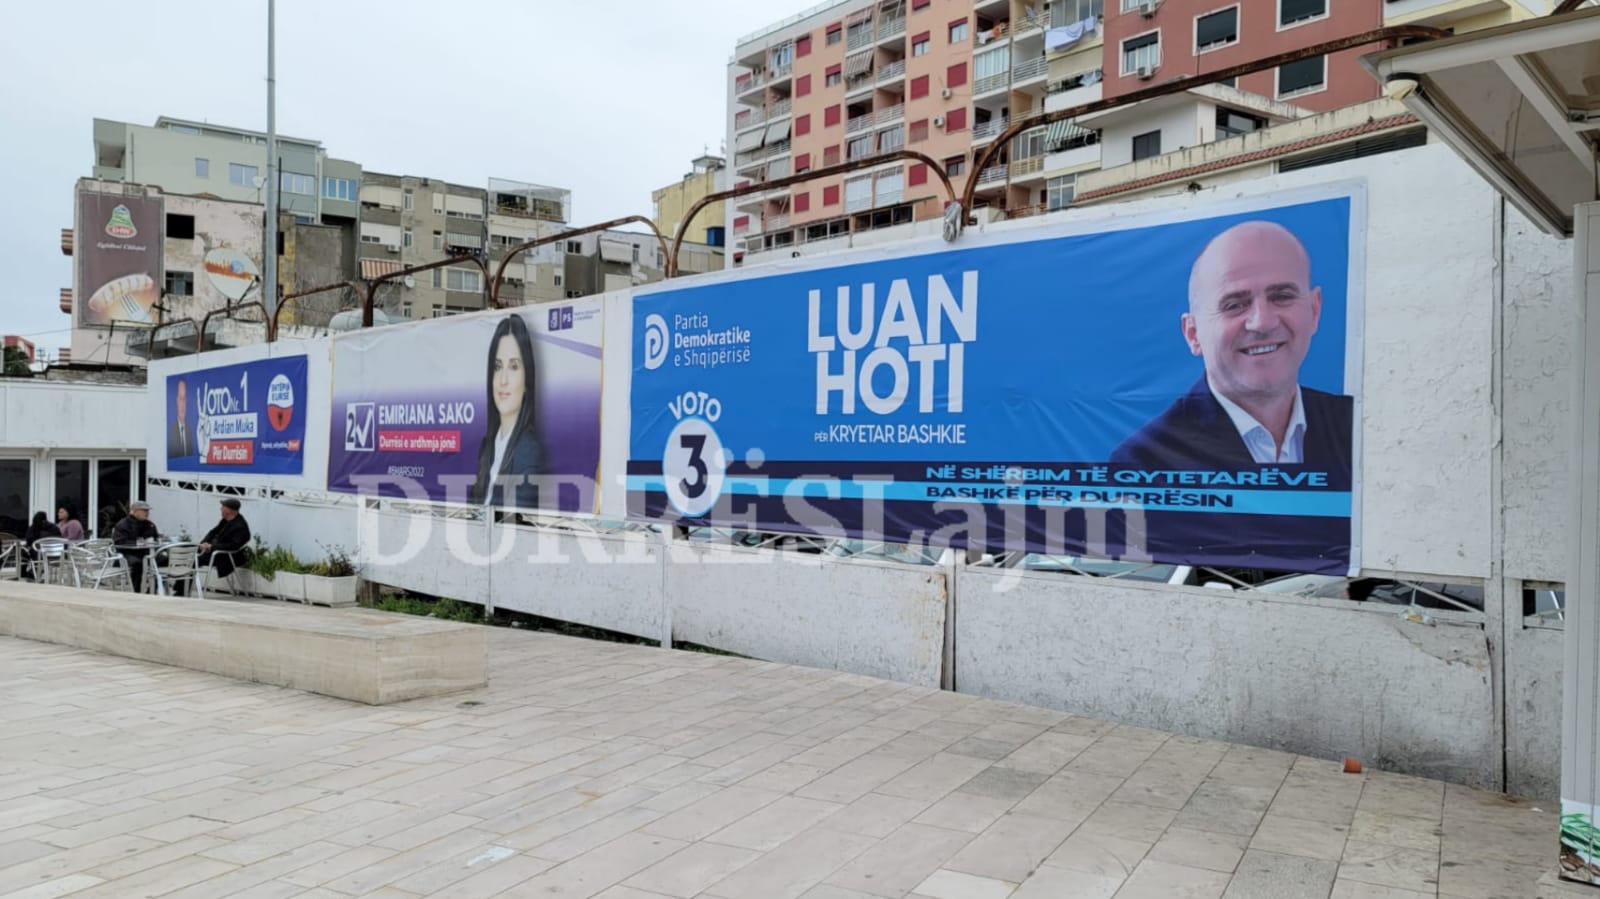 Një muaj pas zgjedhjeve në Durrës, posterat e fushatës ende nuk janë hequr (VIDEO)